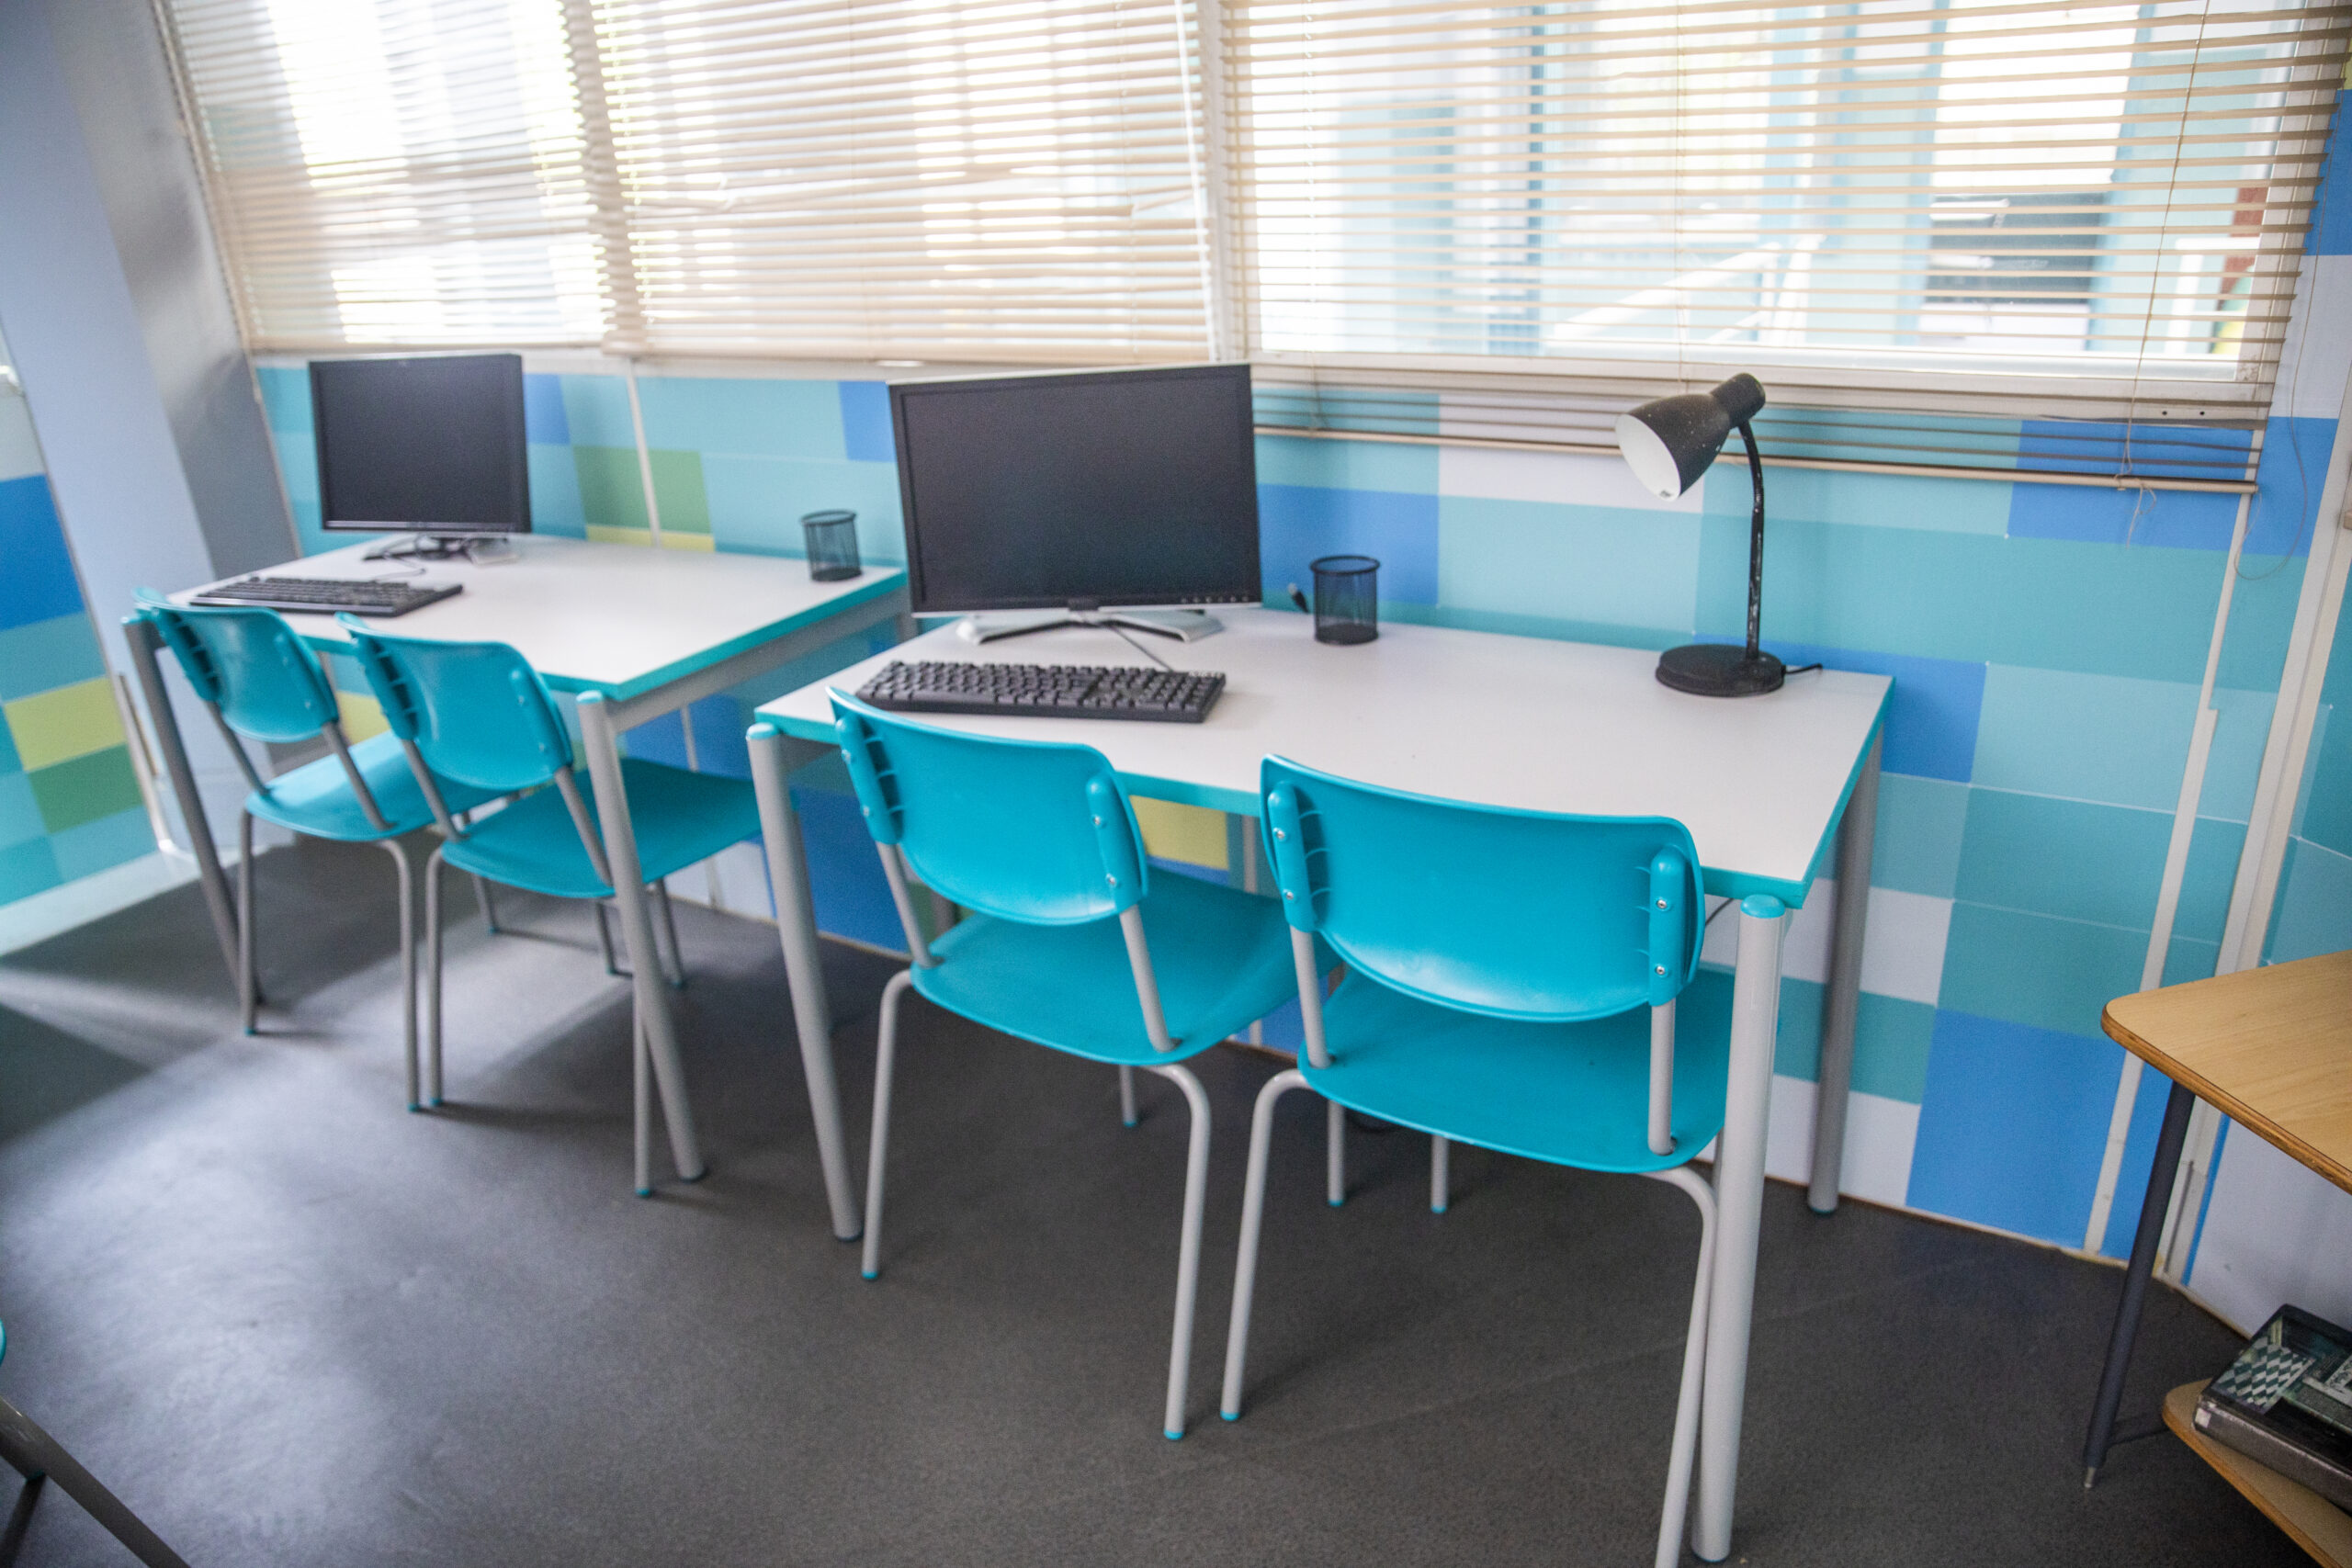 Laboratório de informática com mesas e cadeiras cor azul, sobre as mesas computadores e equipamentos eletronicos